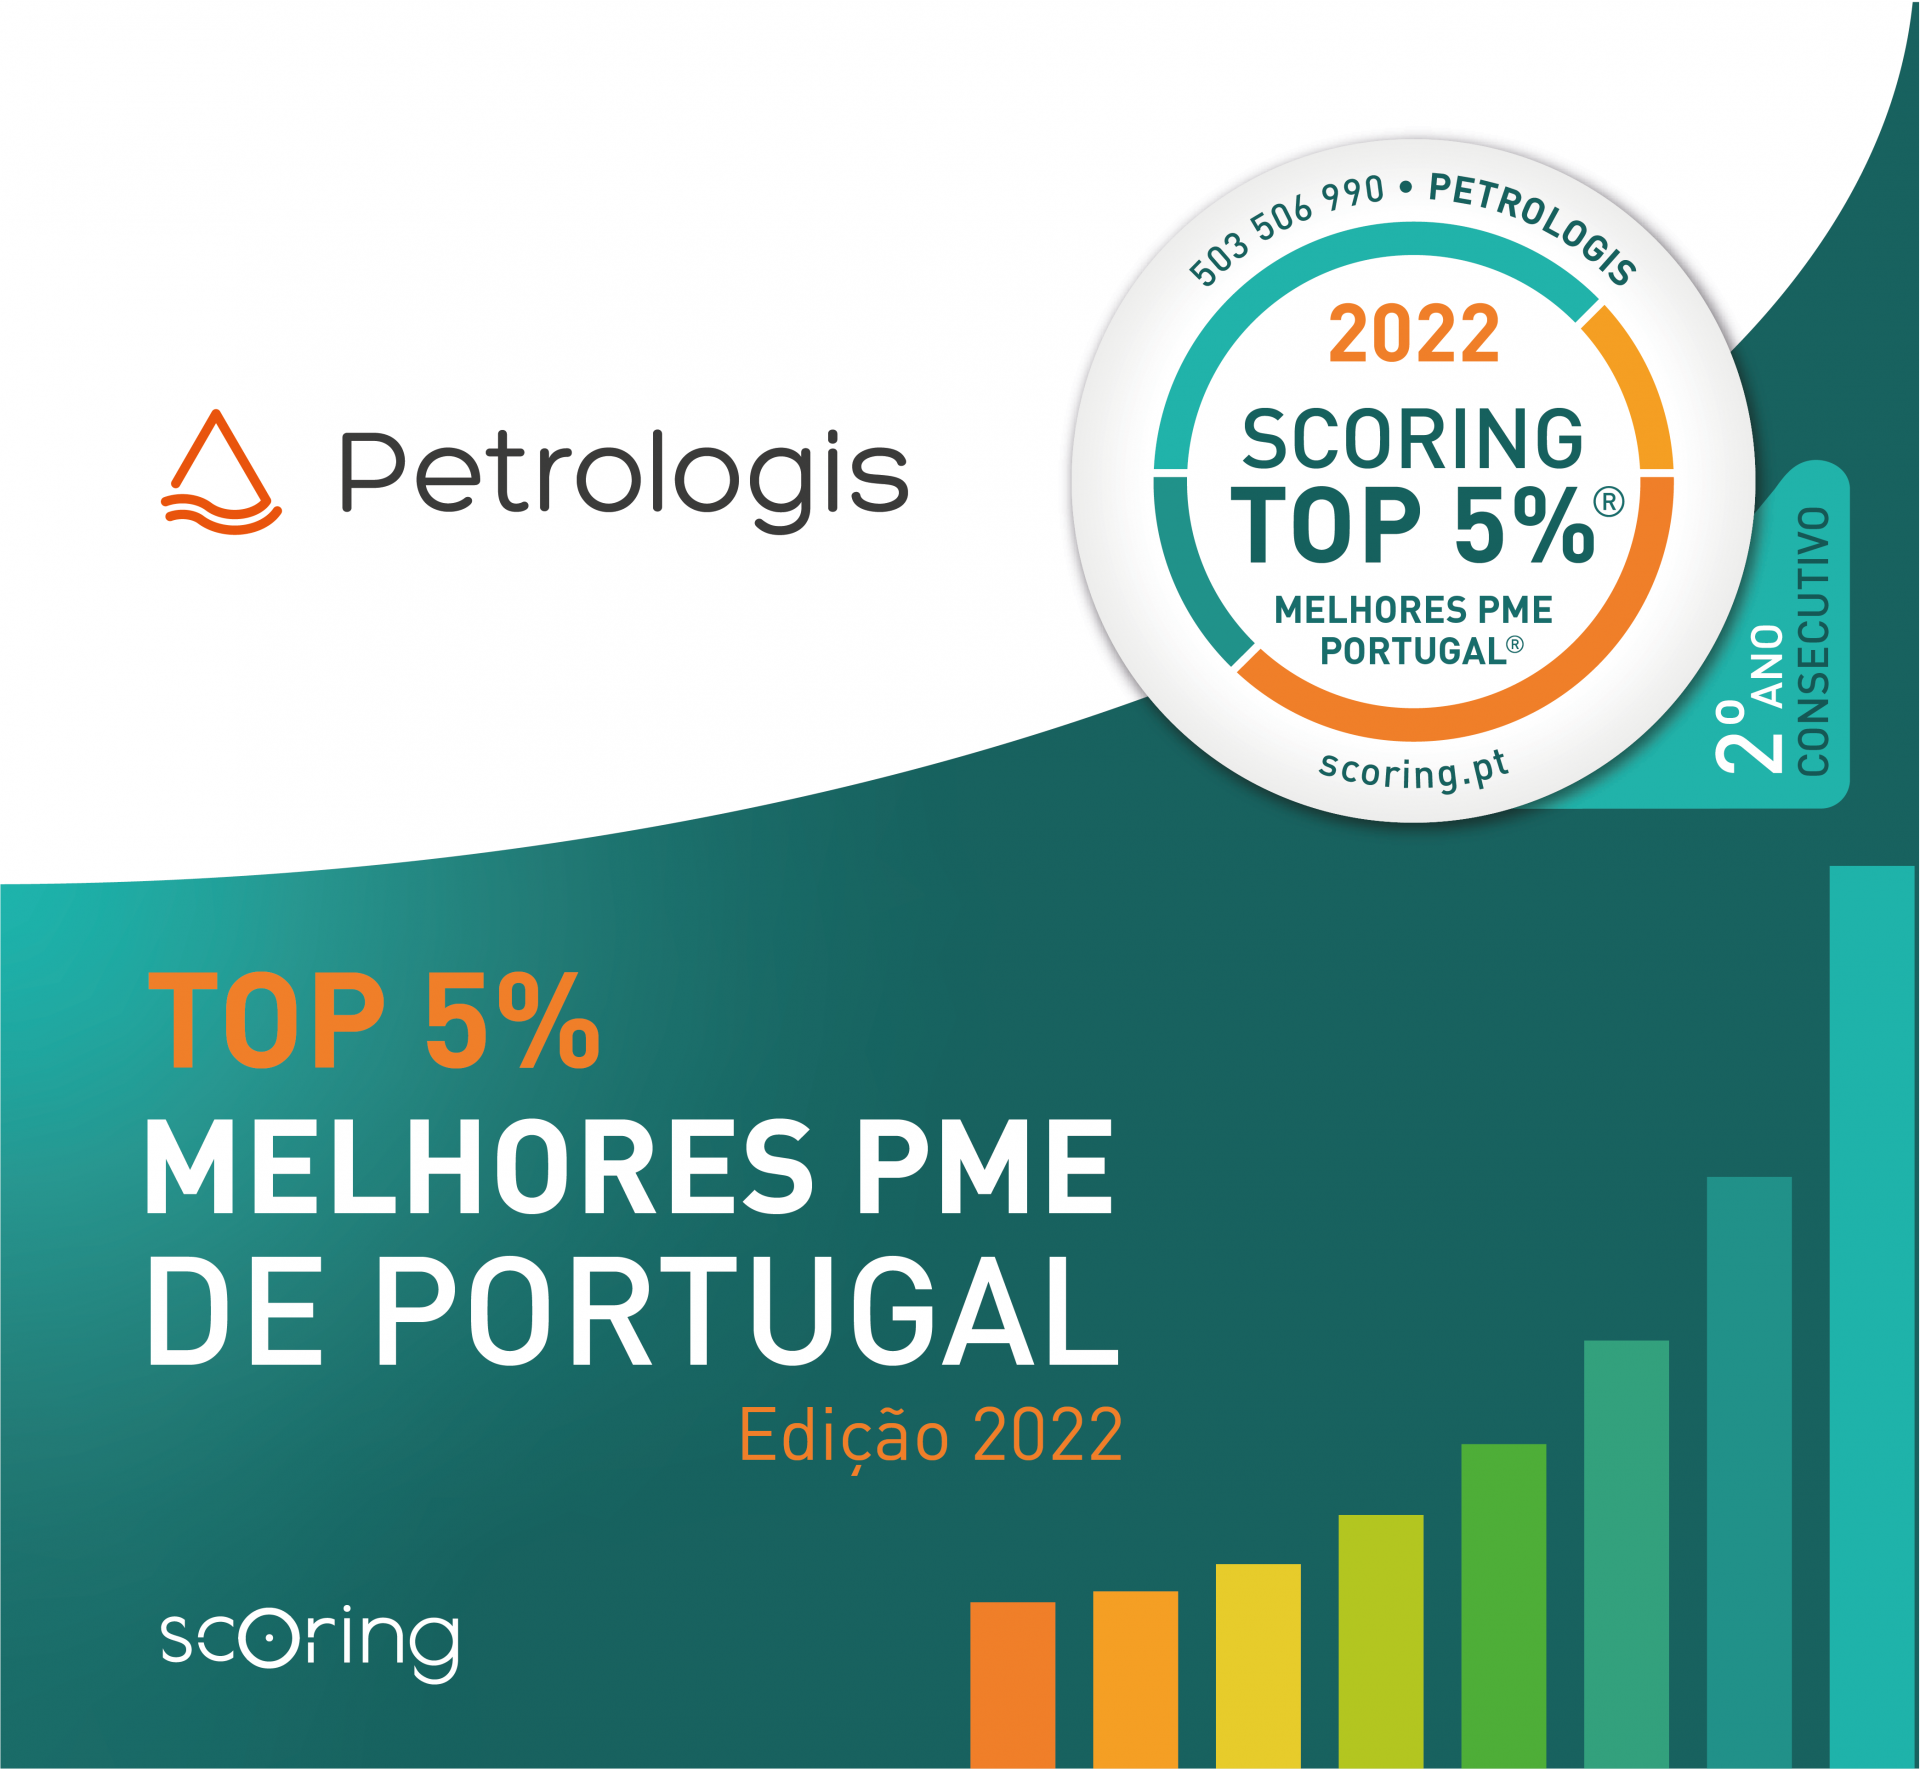 TOP 5% MELHORES PME PORTUGAL - 2º ano consecutivo